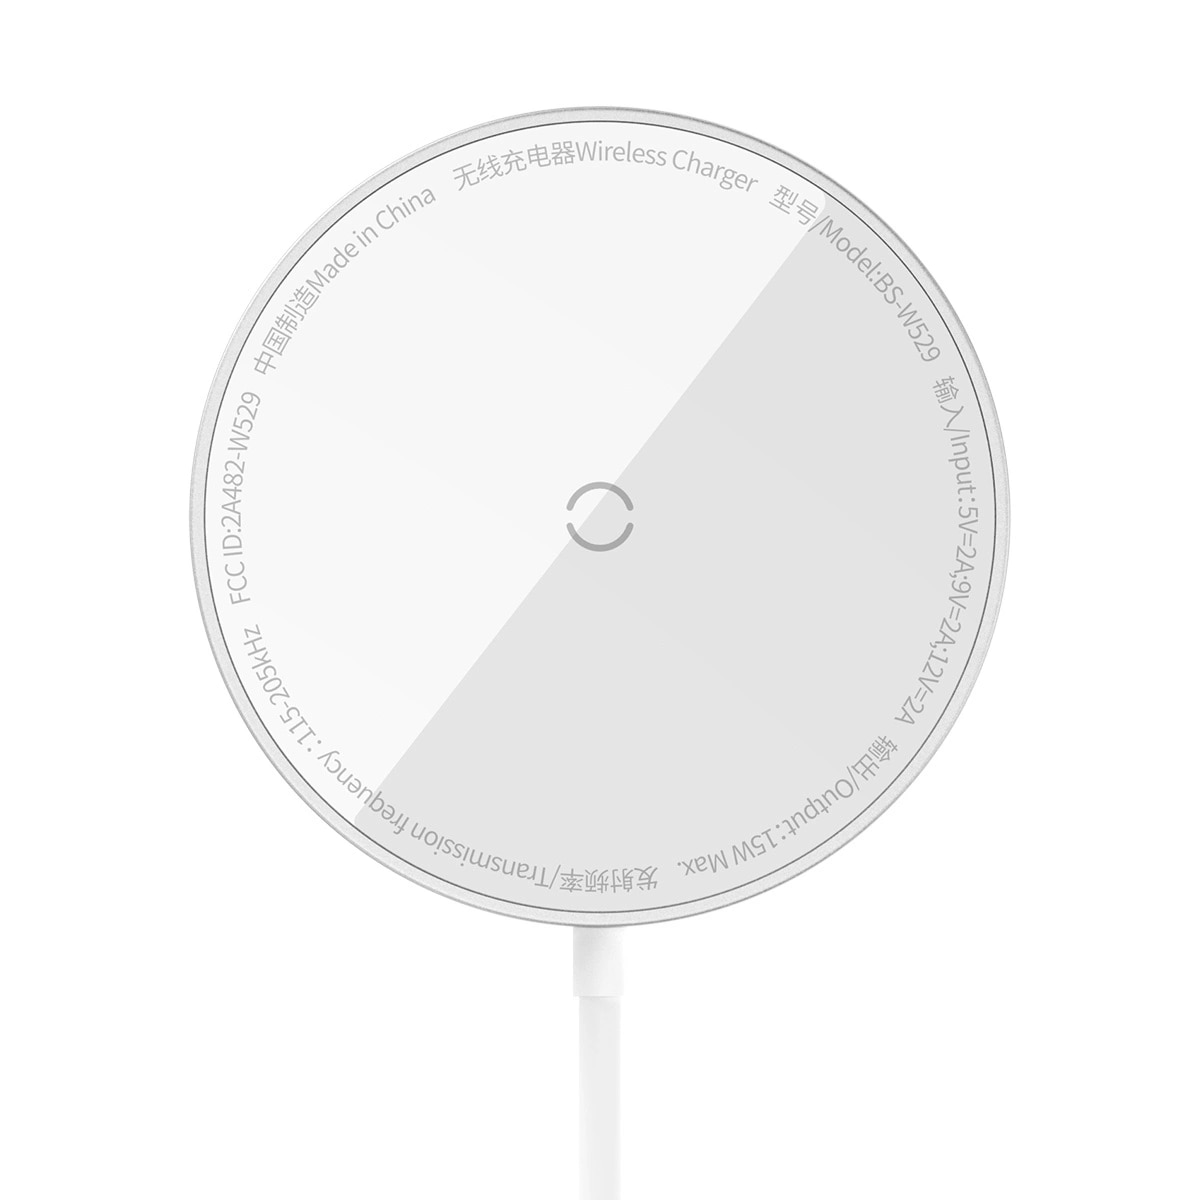 Simple Mini3 Cargador inalámbrico MagSafe de 15W, plata